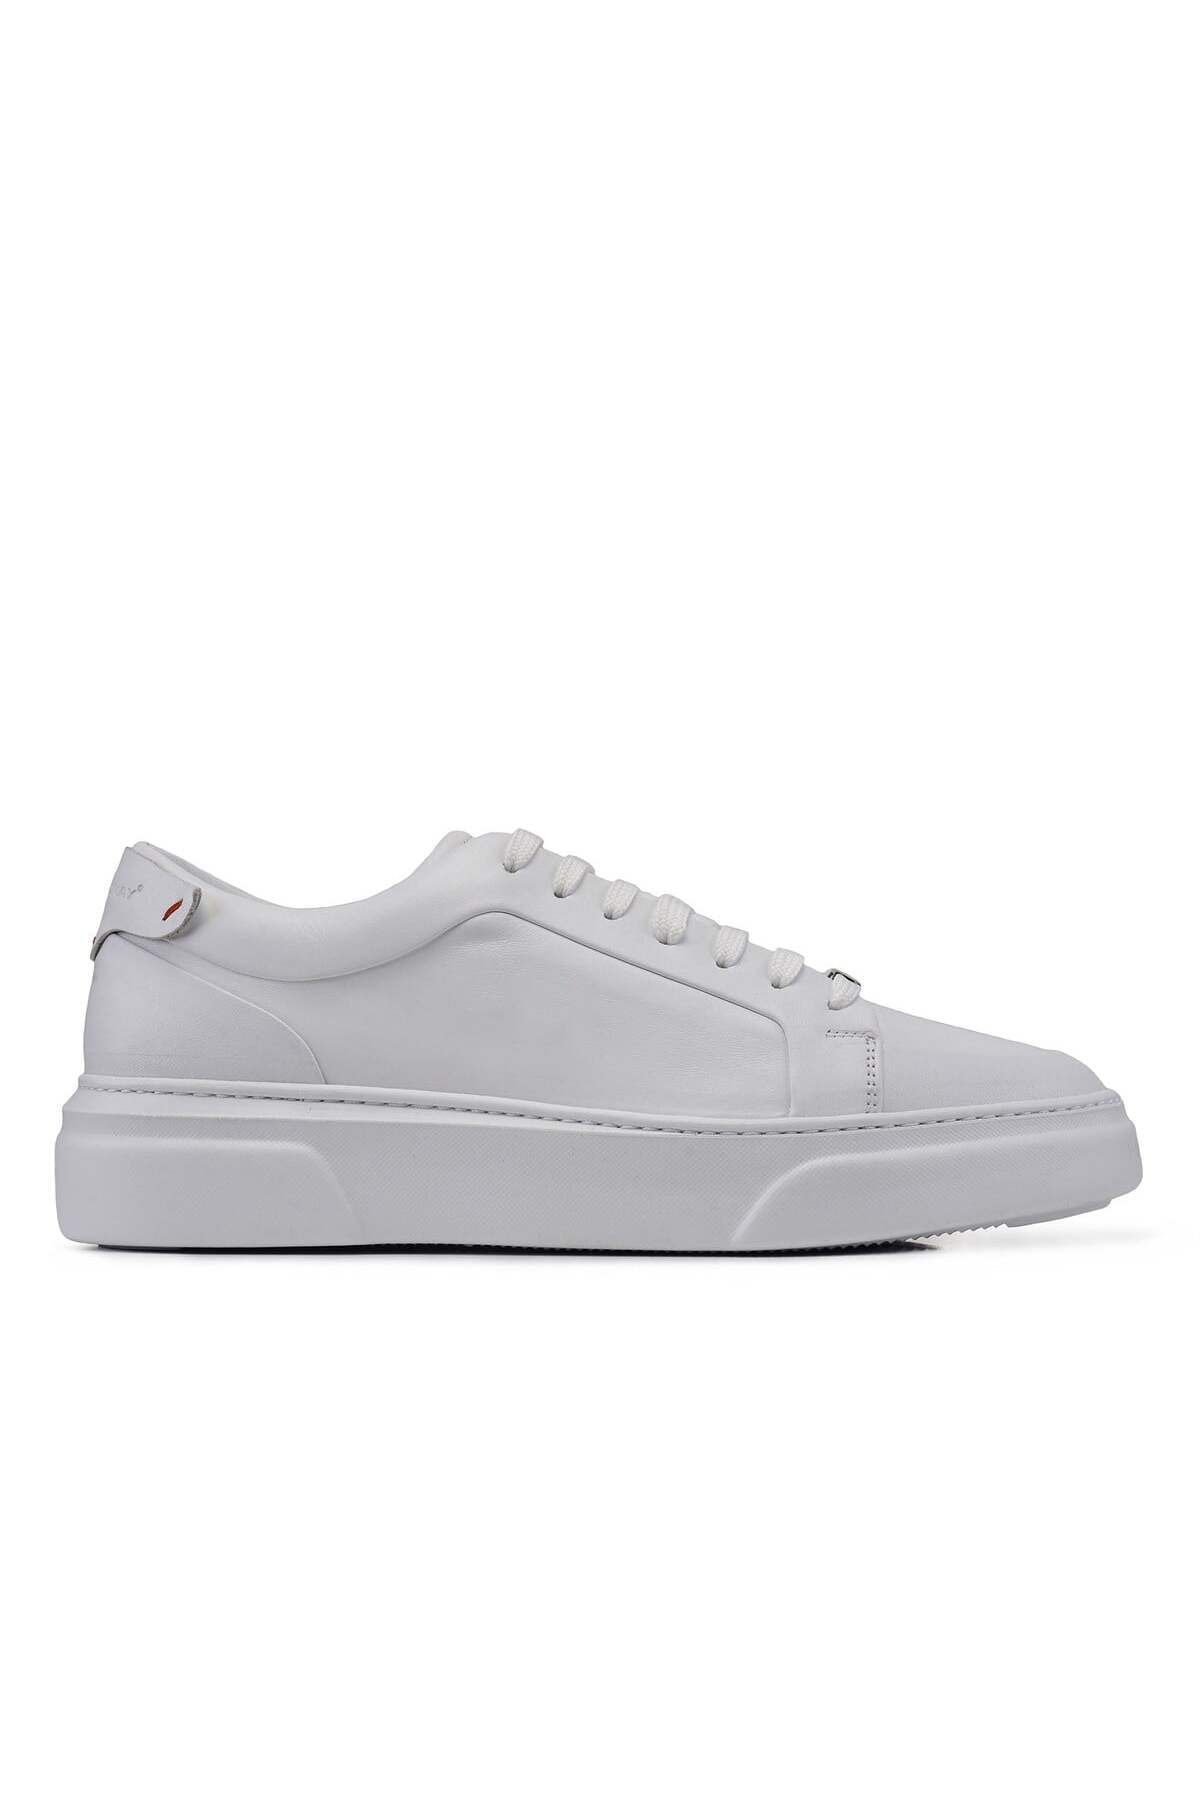 Nevzat Onay Beyaz Bağcıklı Sneaker -92112-